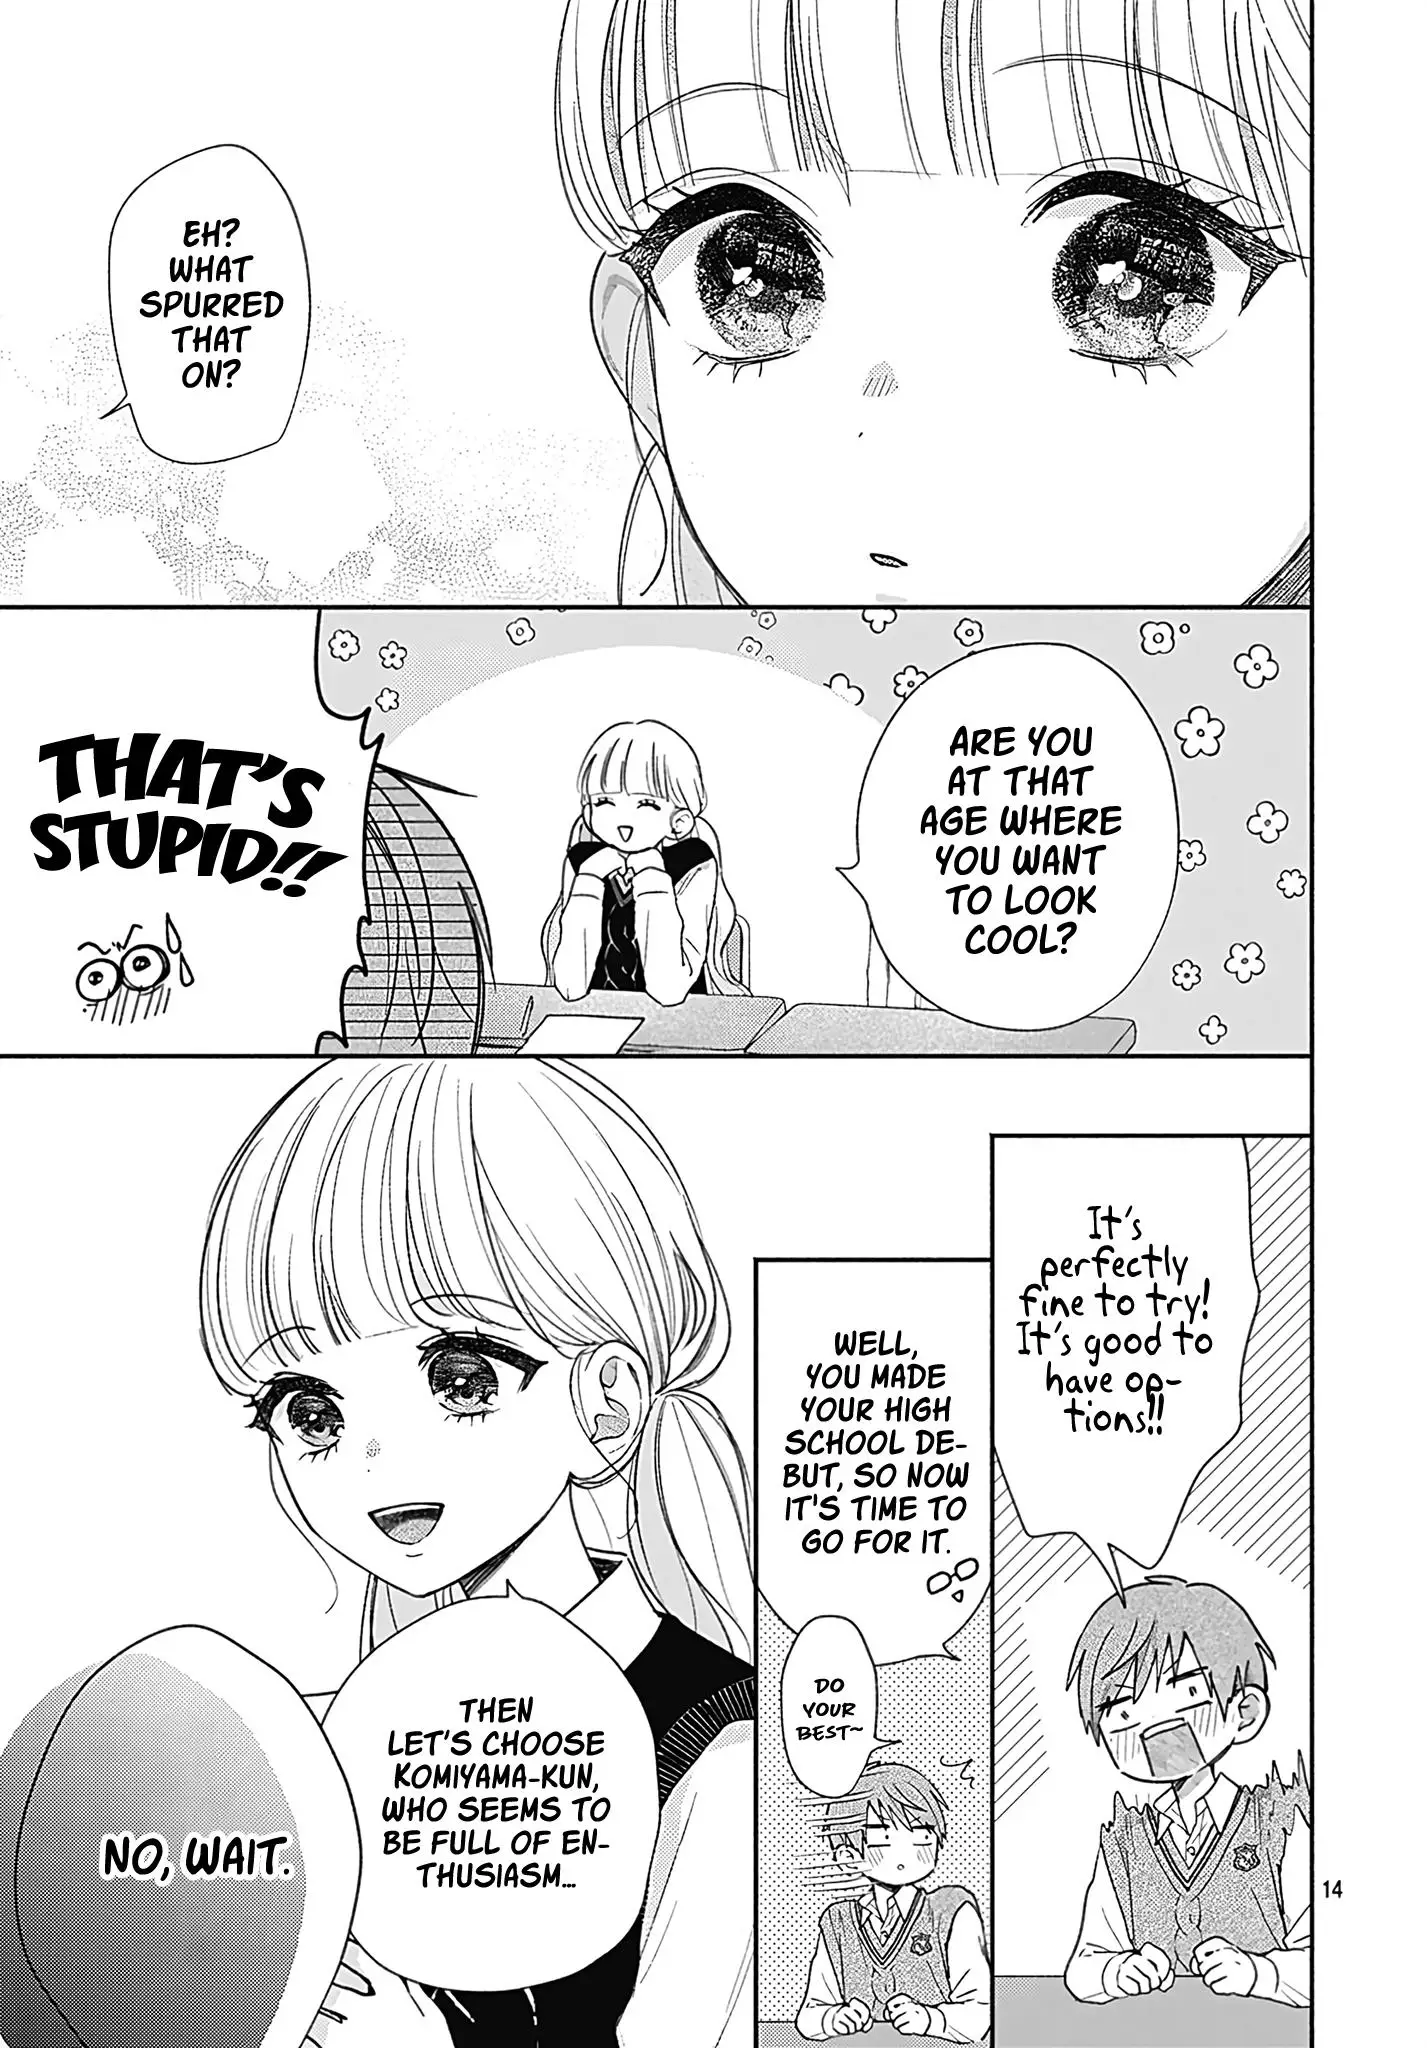 I Hate Komiyama - 3 page 14-8a1d17be